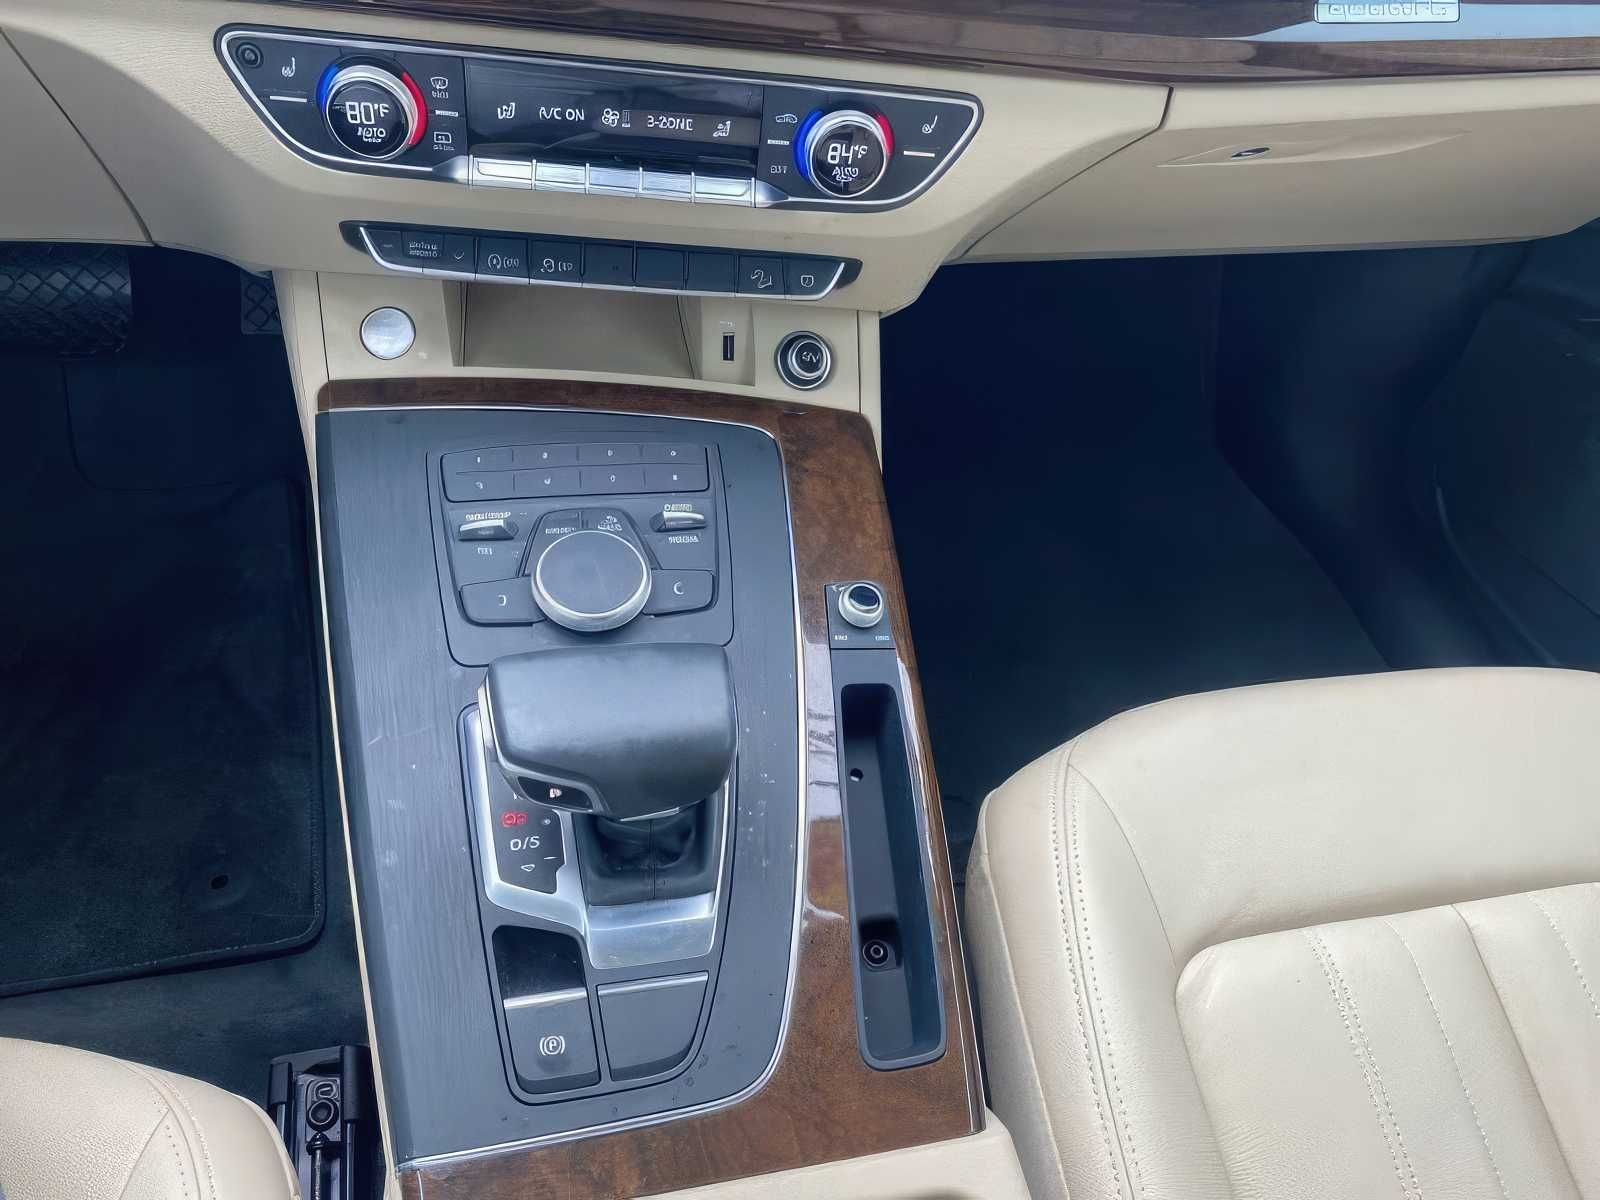 2019 Audi Q5 quattro Premium